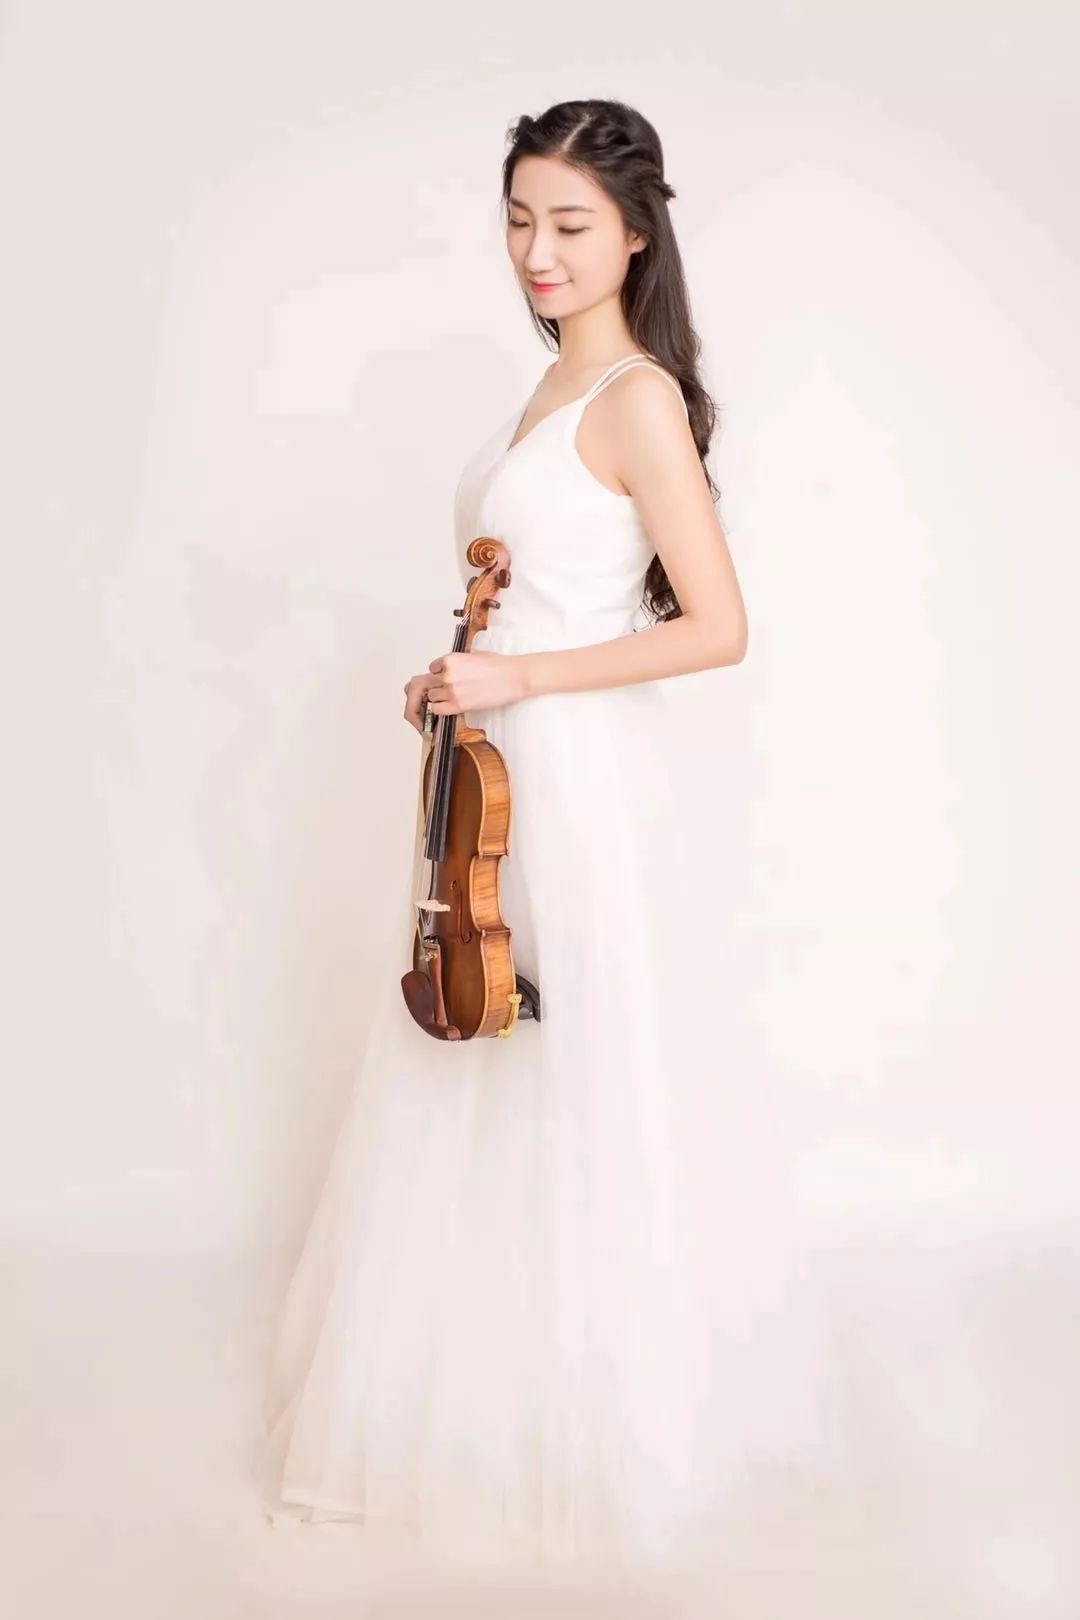 星海学院80后女小提琴图片